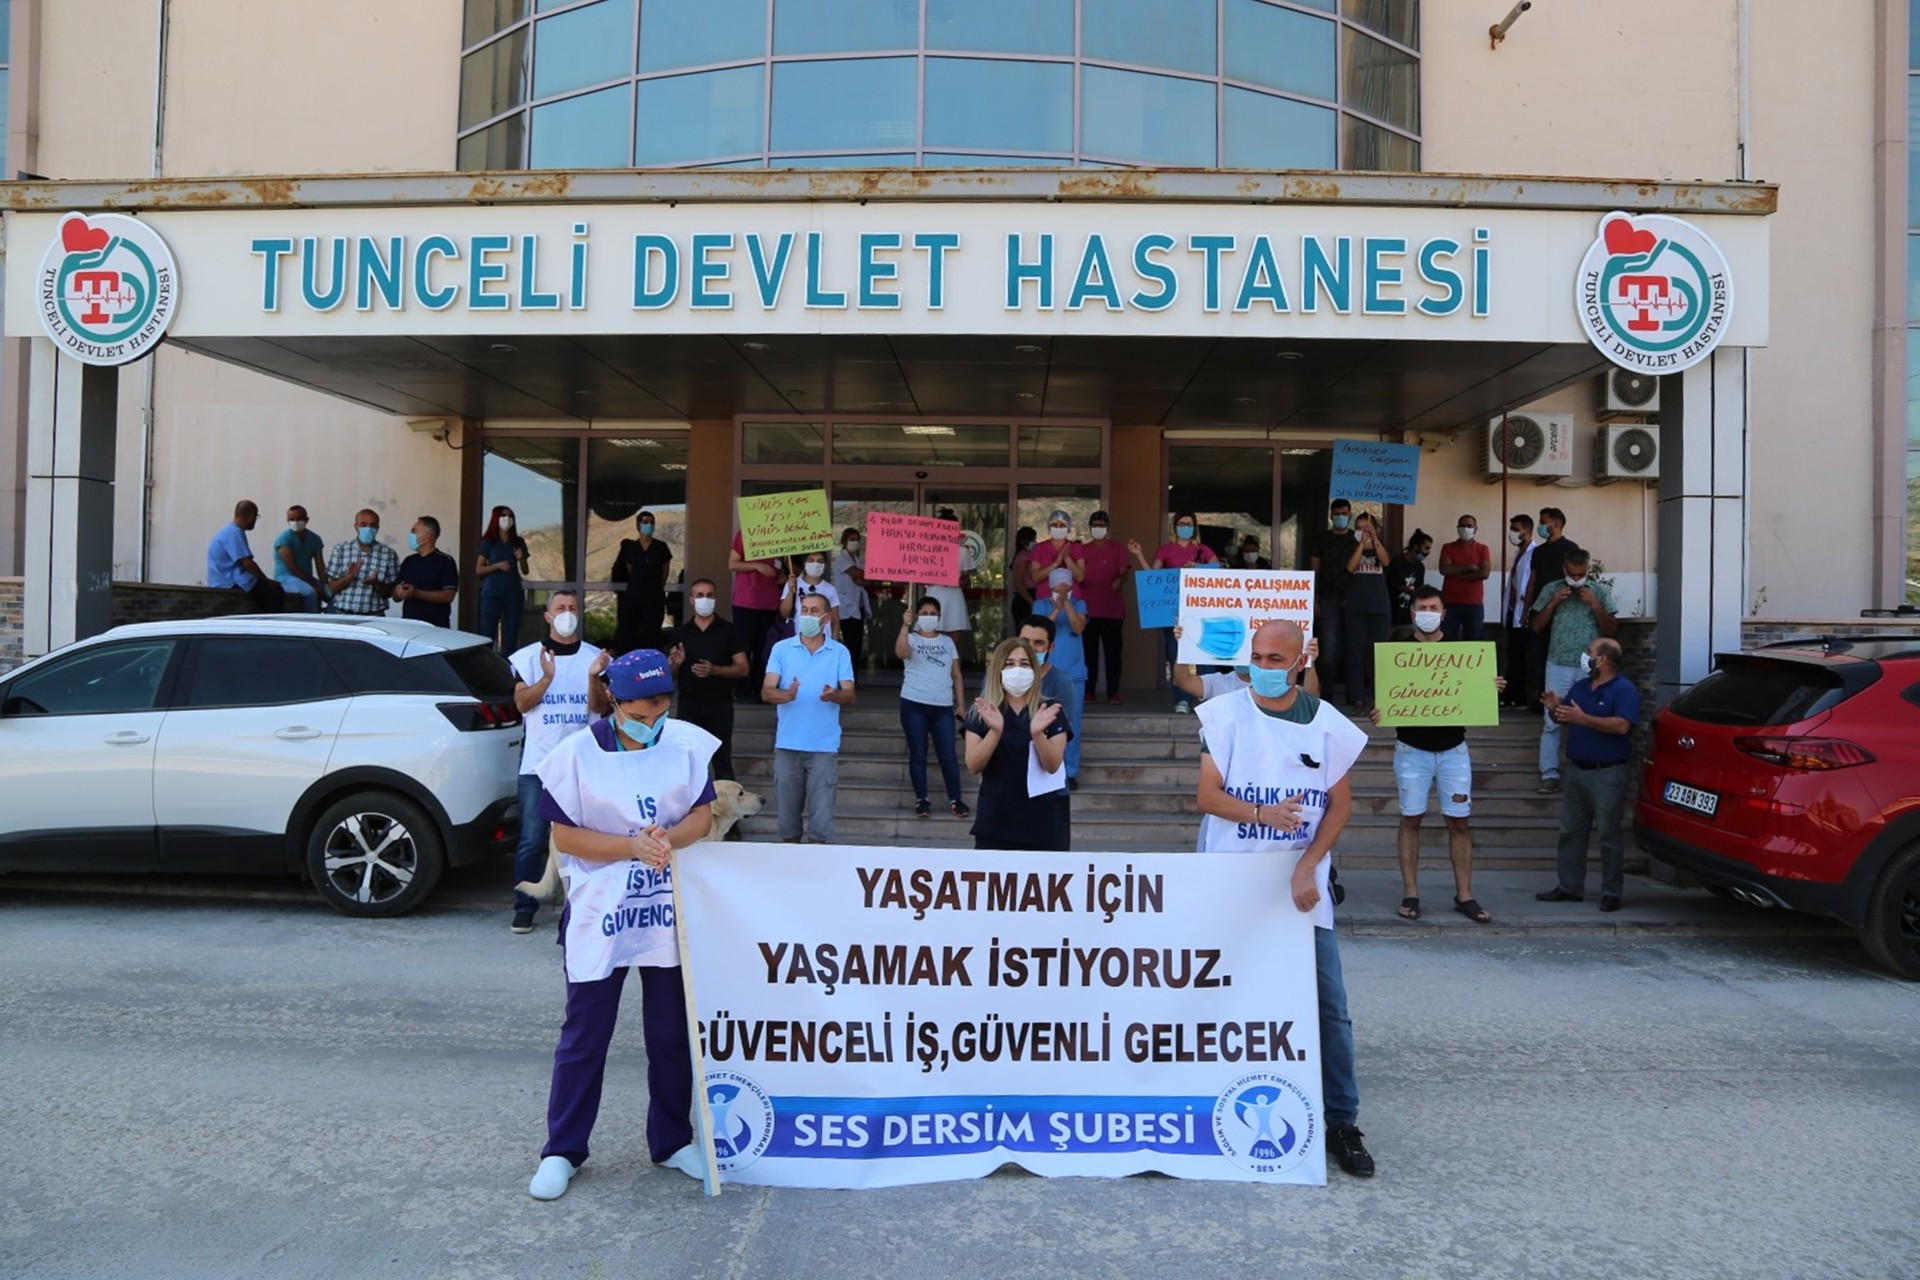 SES Dersim Şubesi, koronavirüs ile mücadele ederken hayatını kaybeden sağlık emekçileri için Tunceli Devlet Hastanesi önünde basın açıklaması gerçekleştirdi